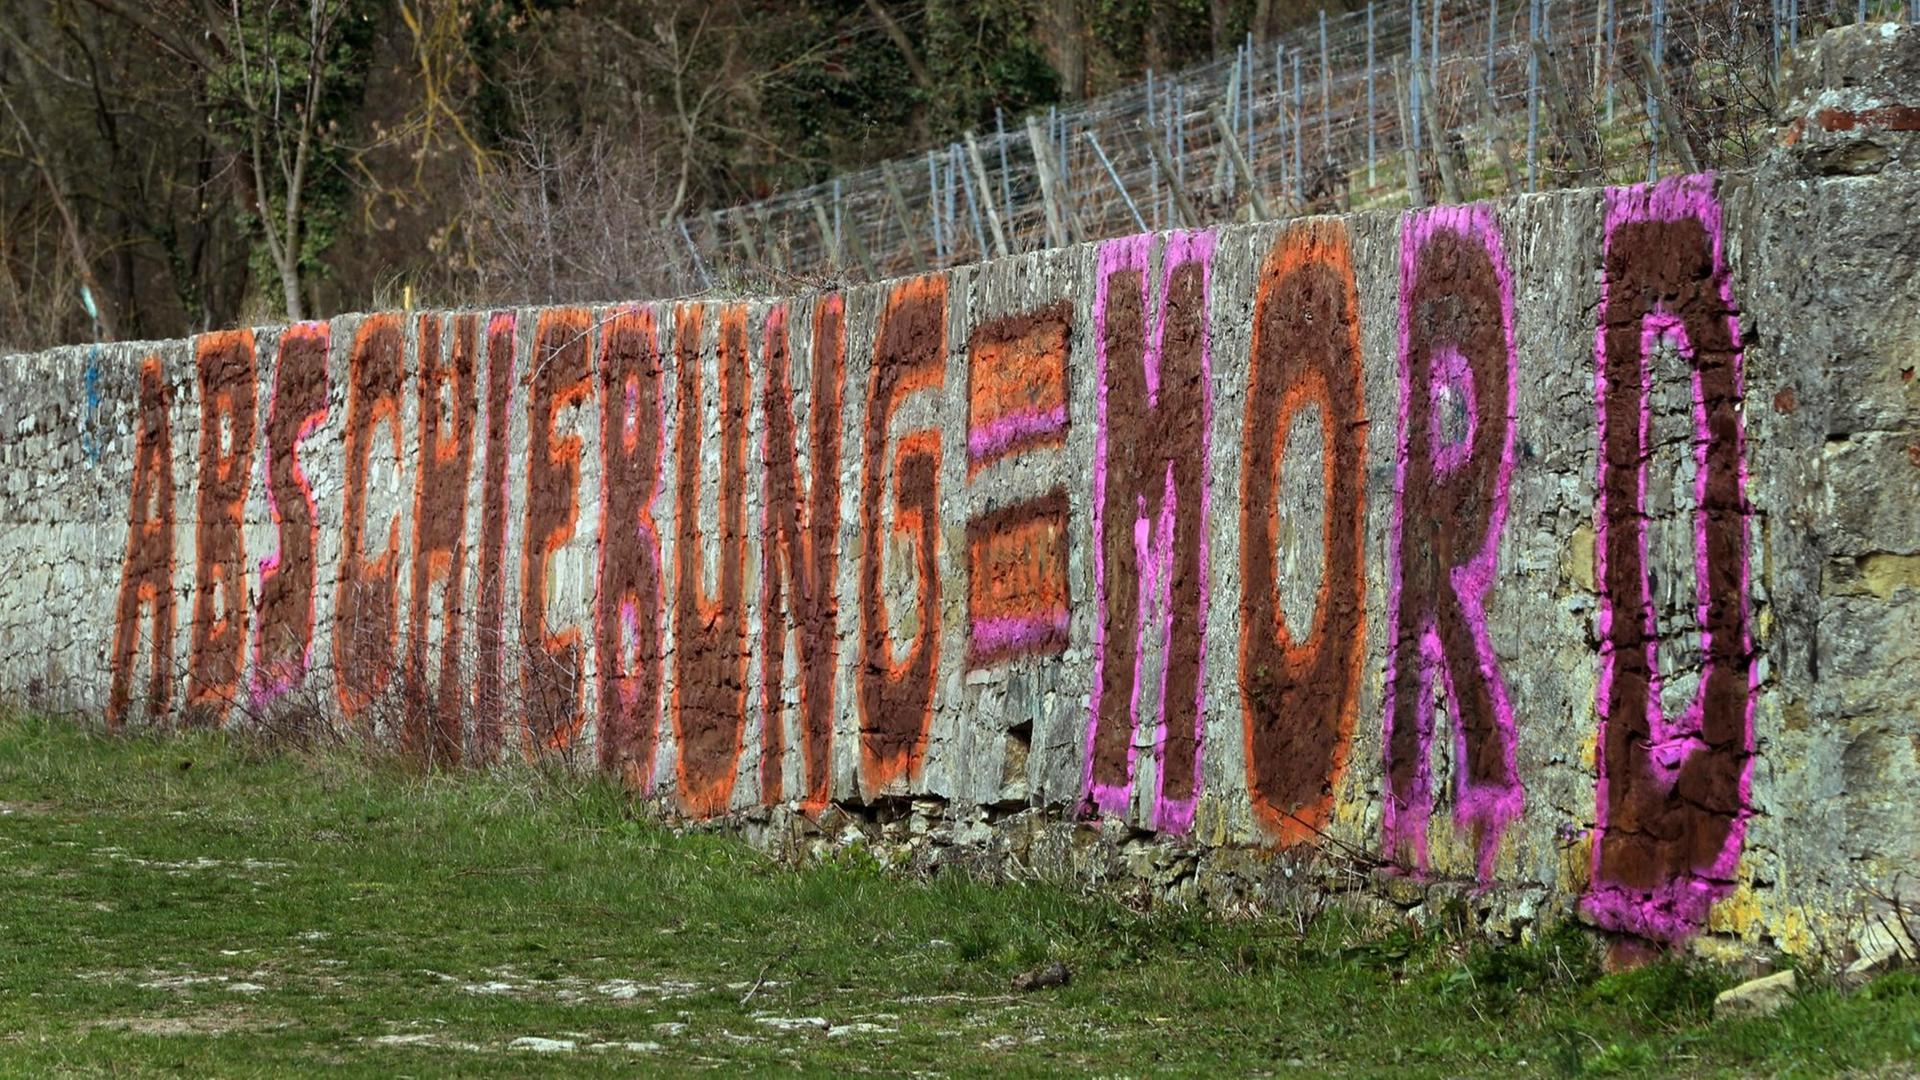 Ein Graffiti mit dem Text "Abschiebung = Mord" ist an einer Weinbergsmauer in Würzberg, Bayern zu sehen. Die Kriminalpolizei ermittelt gegen die unbekannten Täter, die in einer Pressemitteilung ihre Aktion begründeten.